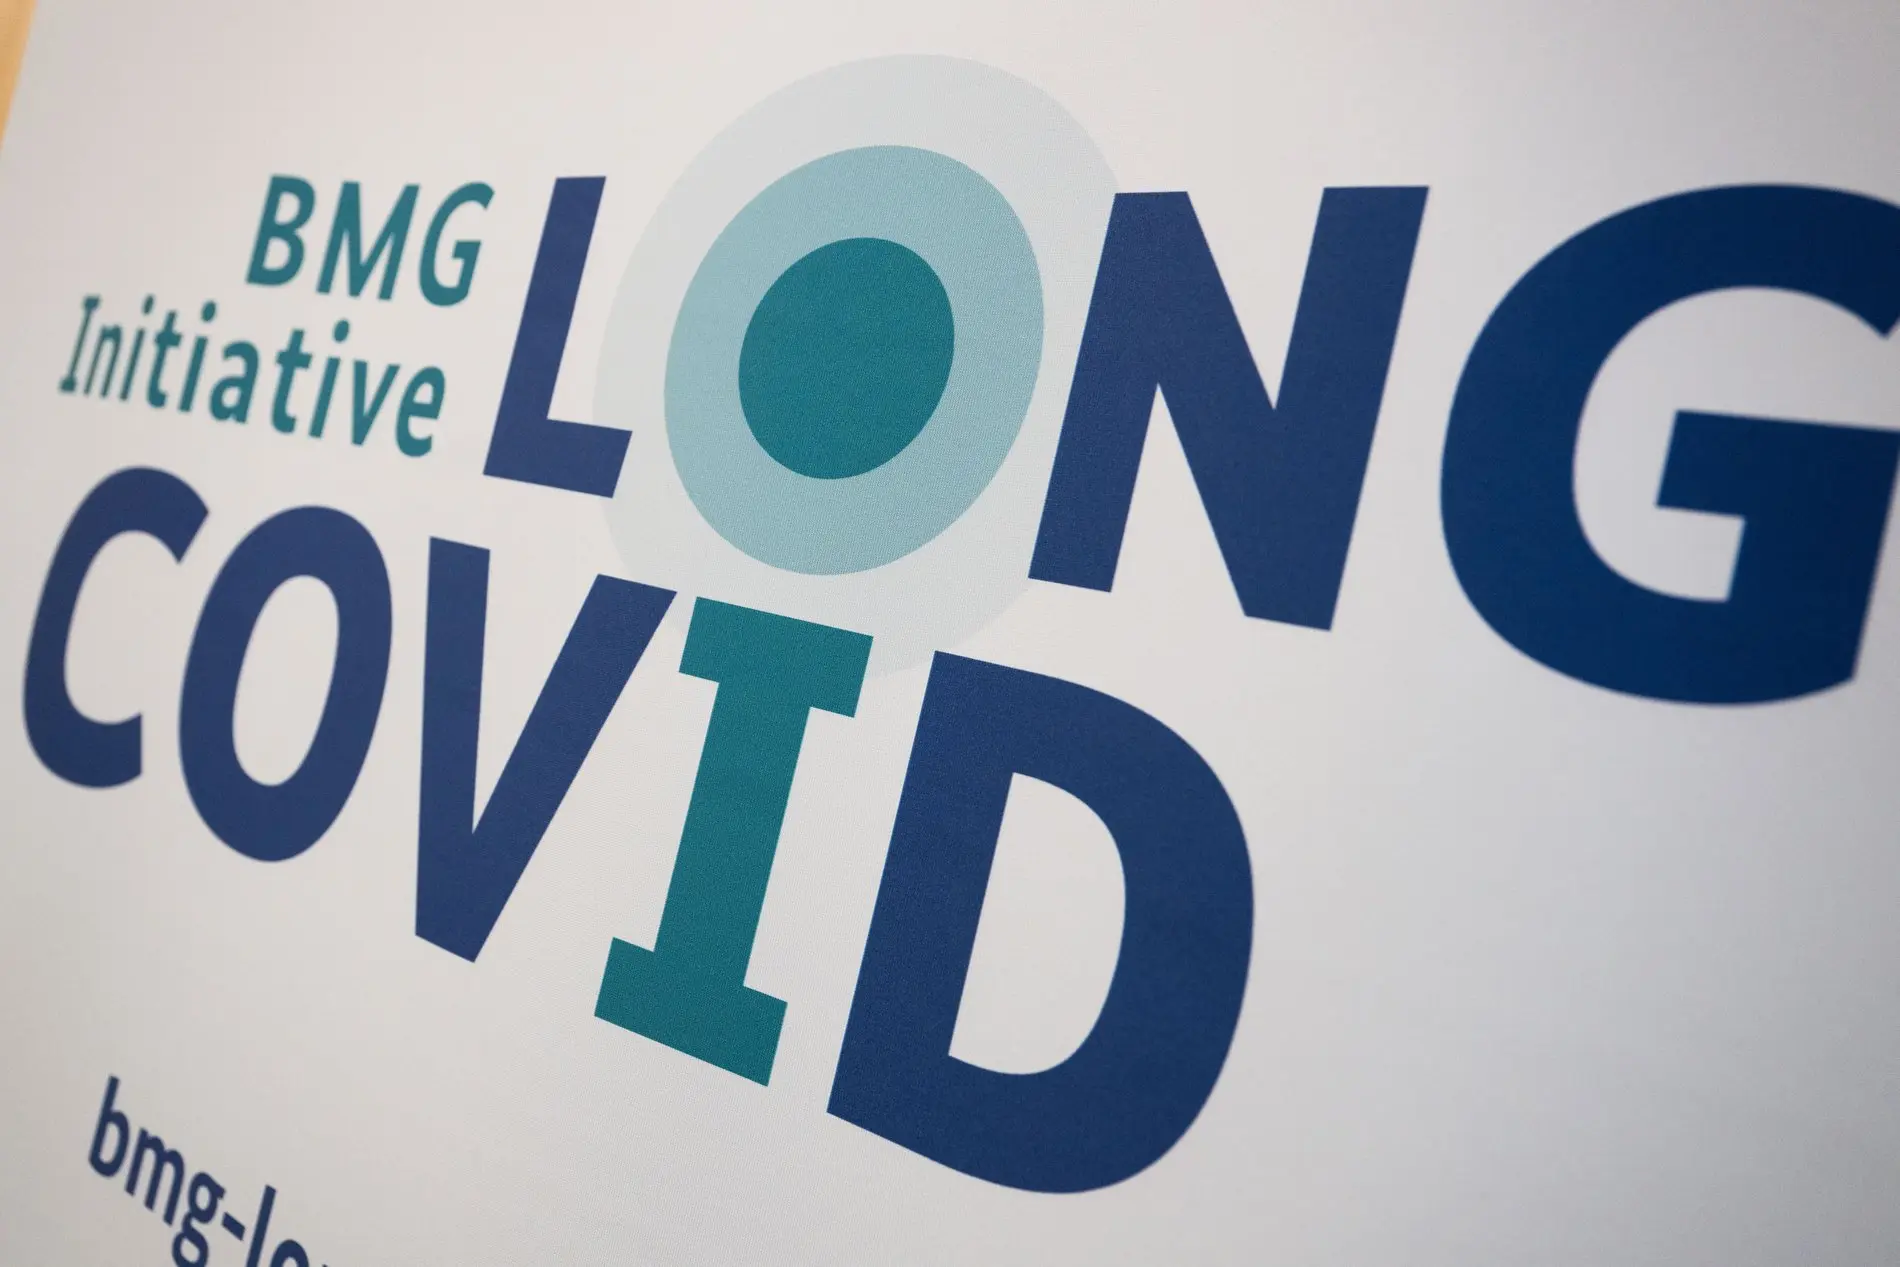 "BMG Initiative Long Covid" steht auf  einem Aufsteller